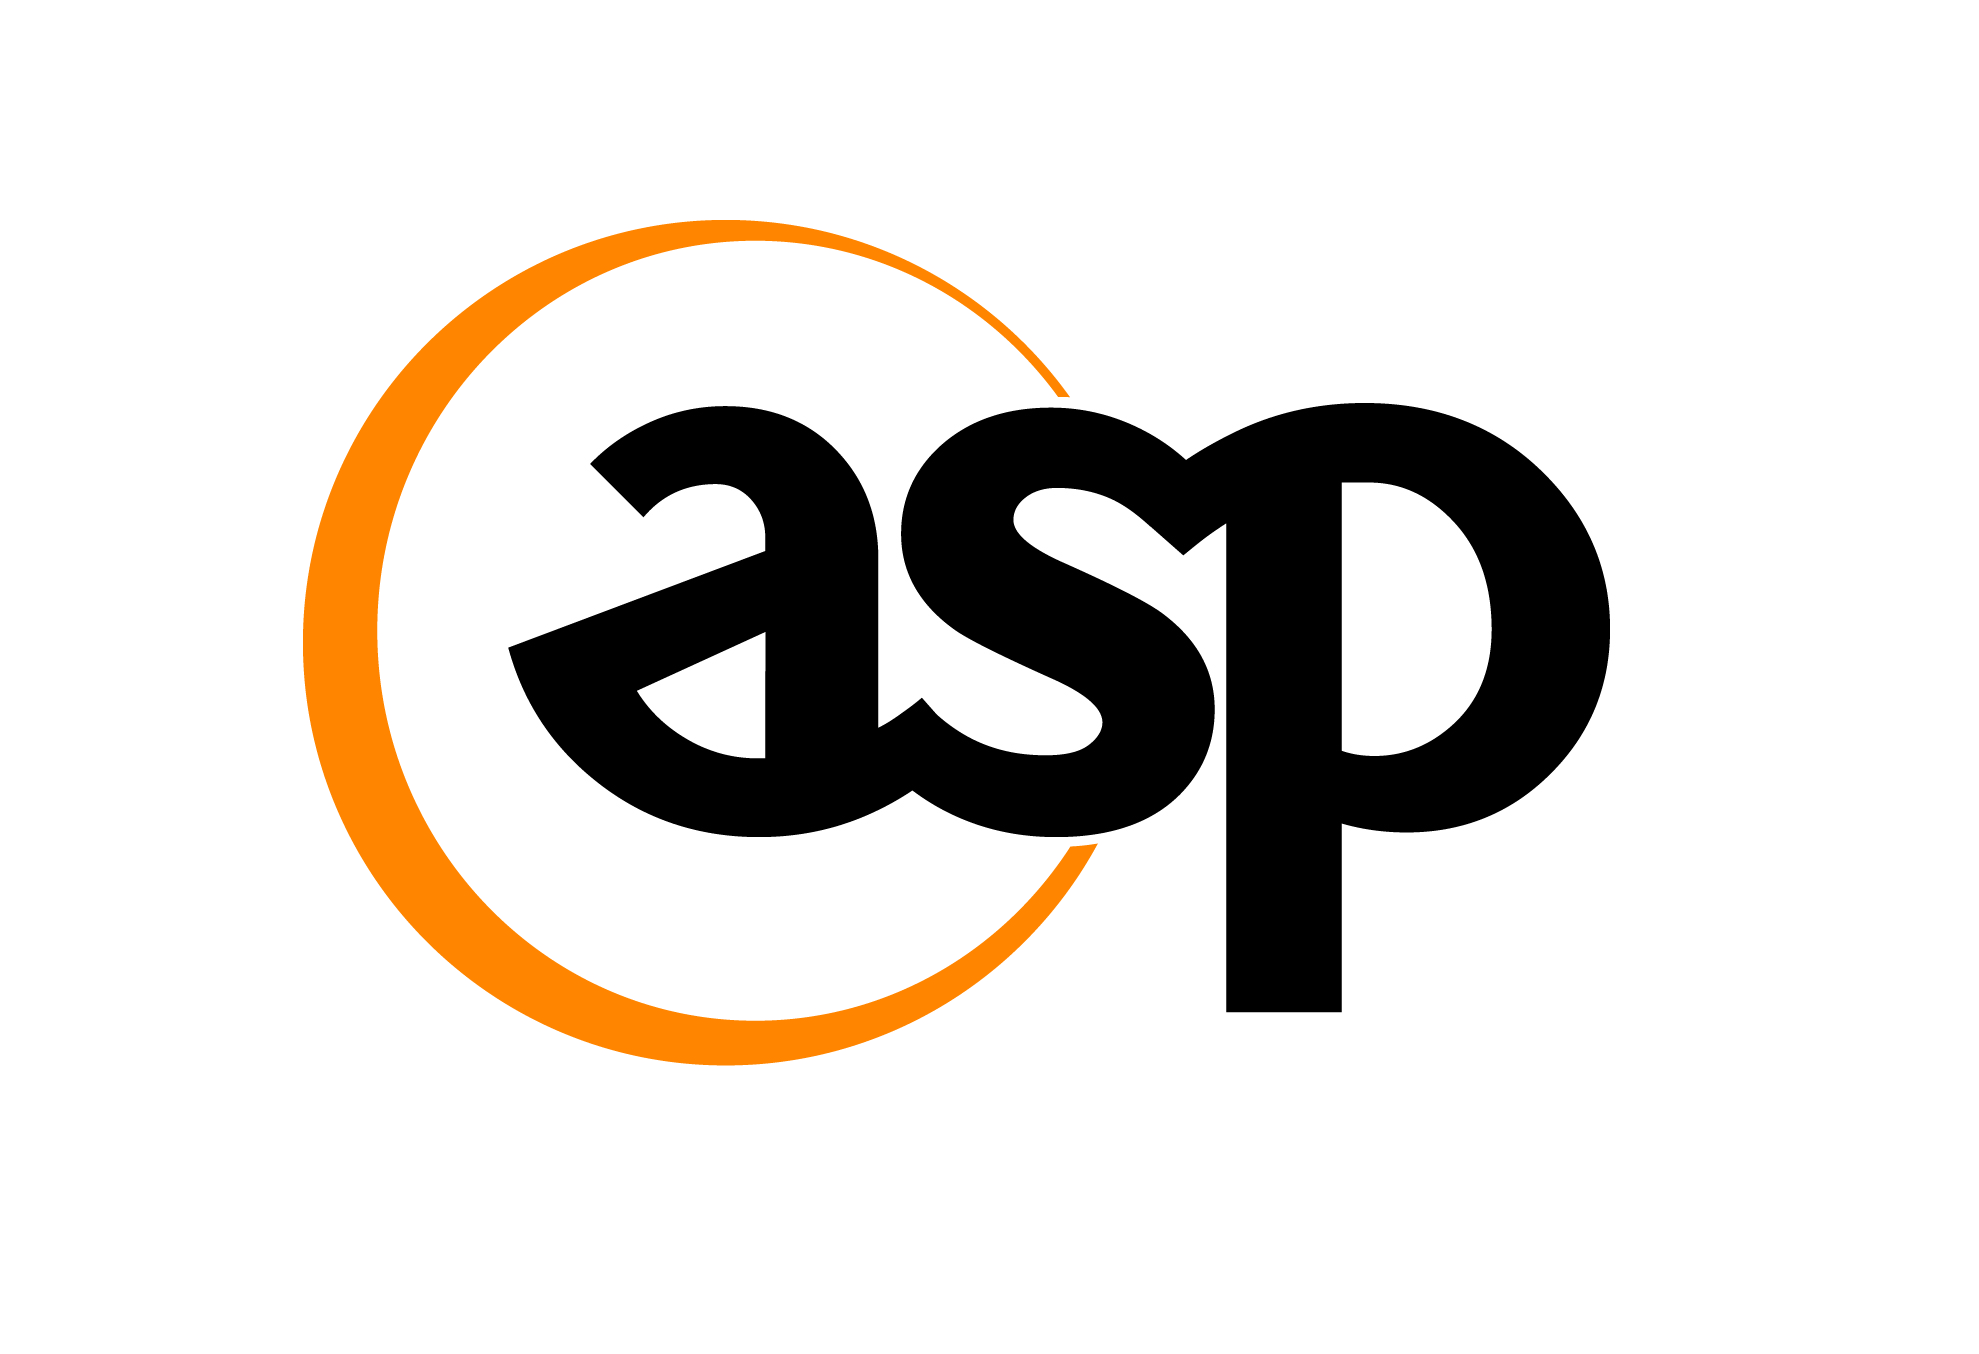 Asp service